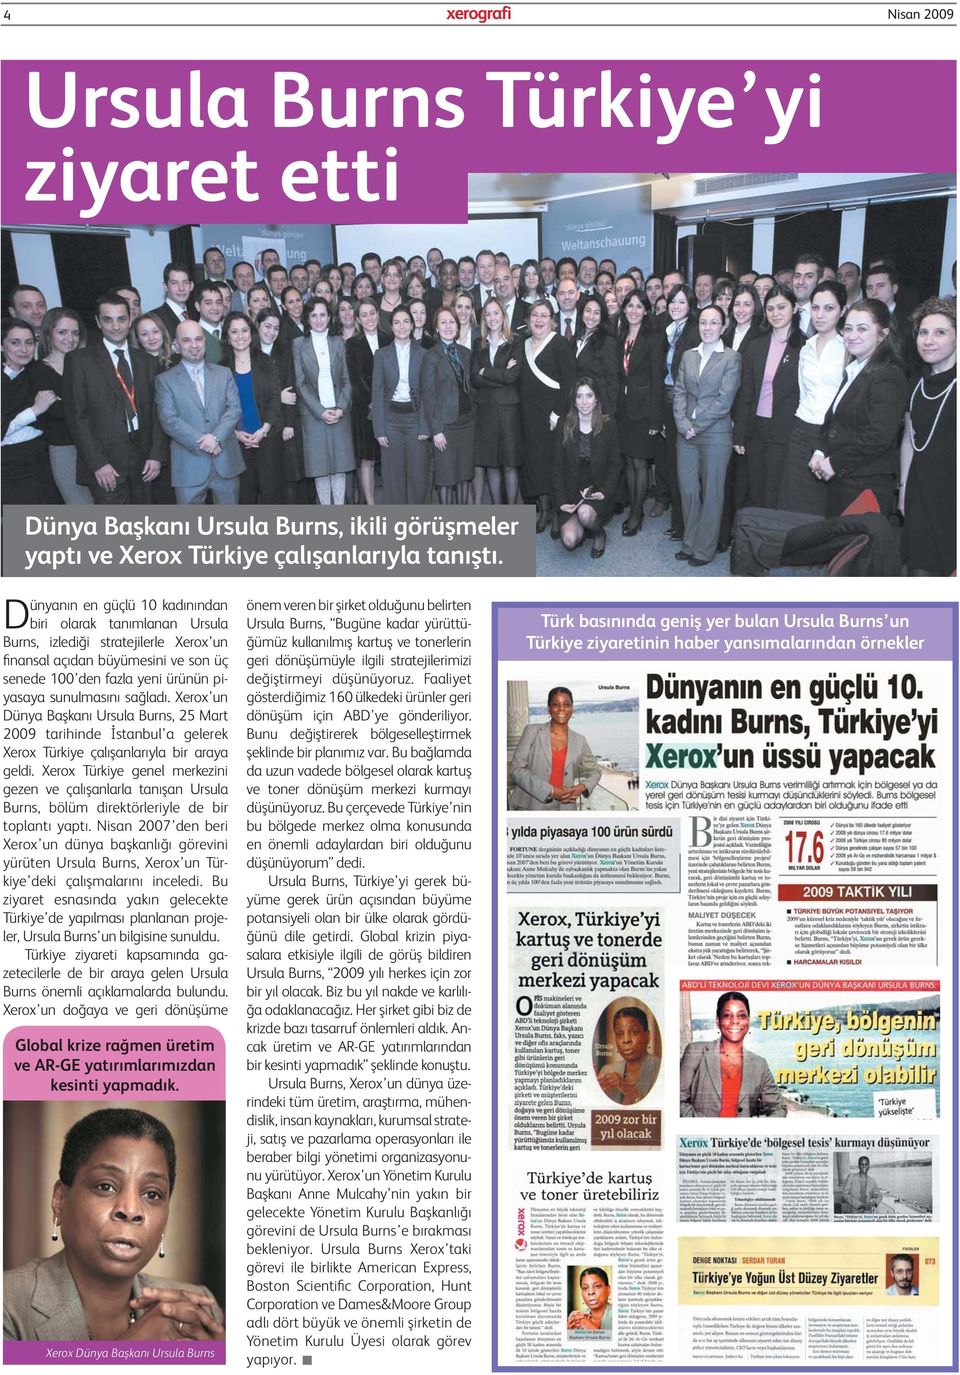 Xerox un Dünya Başkanı Ursula Burns, 25 Mart 2009 tarihinde İstanbul a gelerek Xerox Türkiye çalışanlarıyla bir araya geldi.